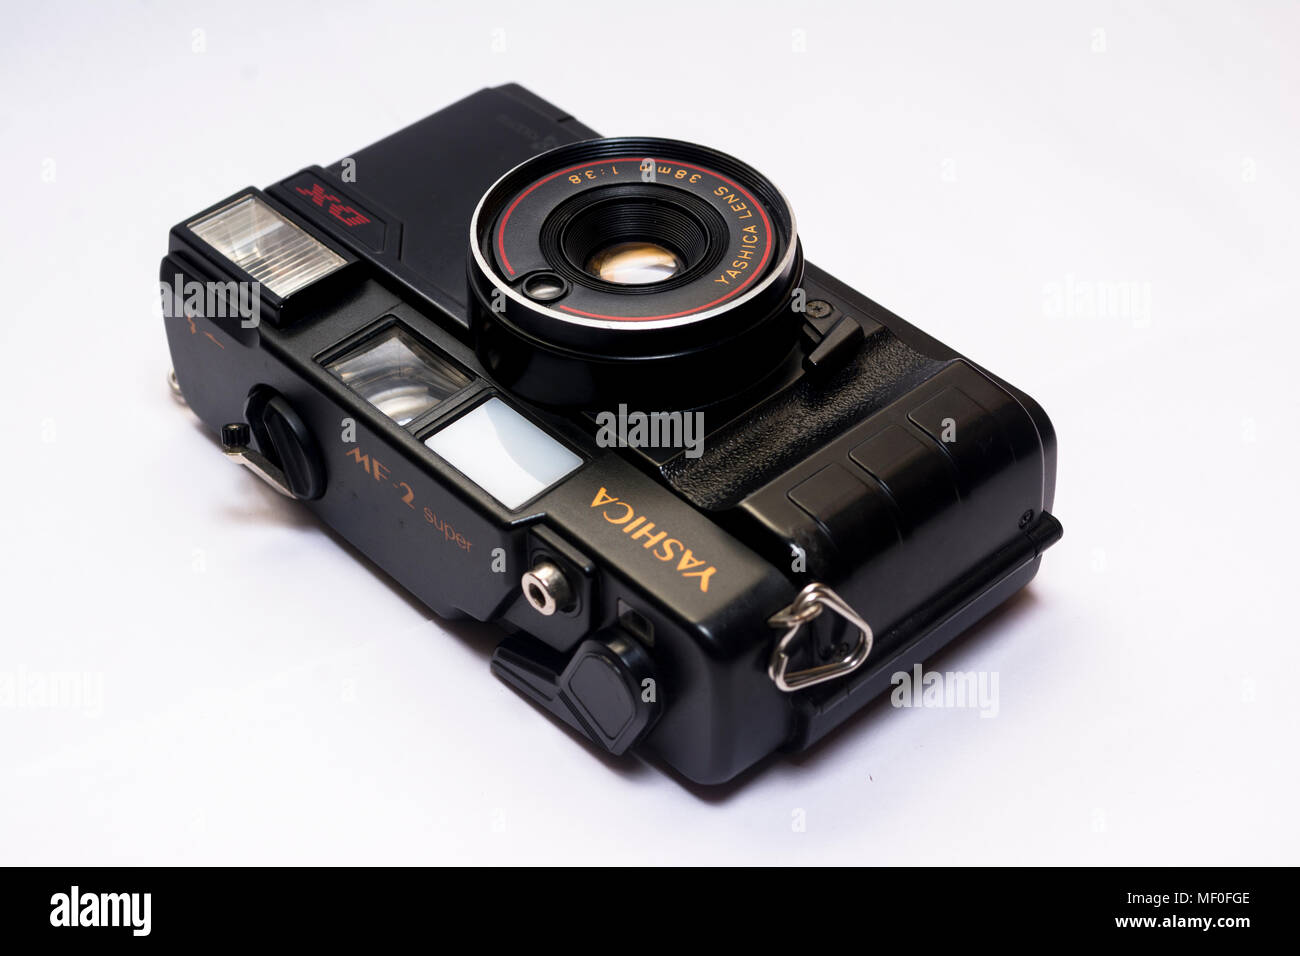 Yashica caméra analogique à fond blanc Banque D'Images